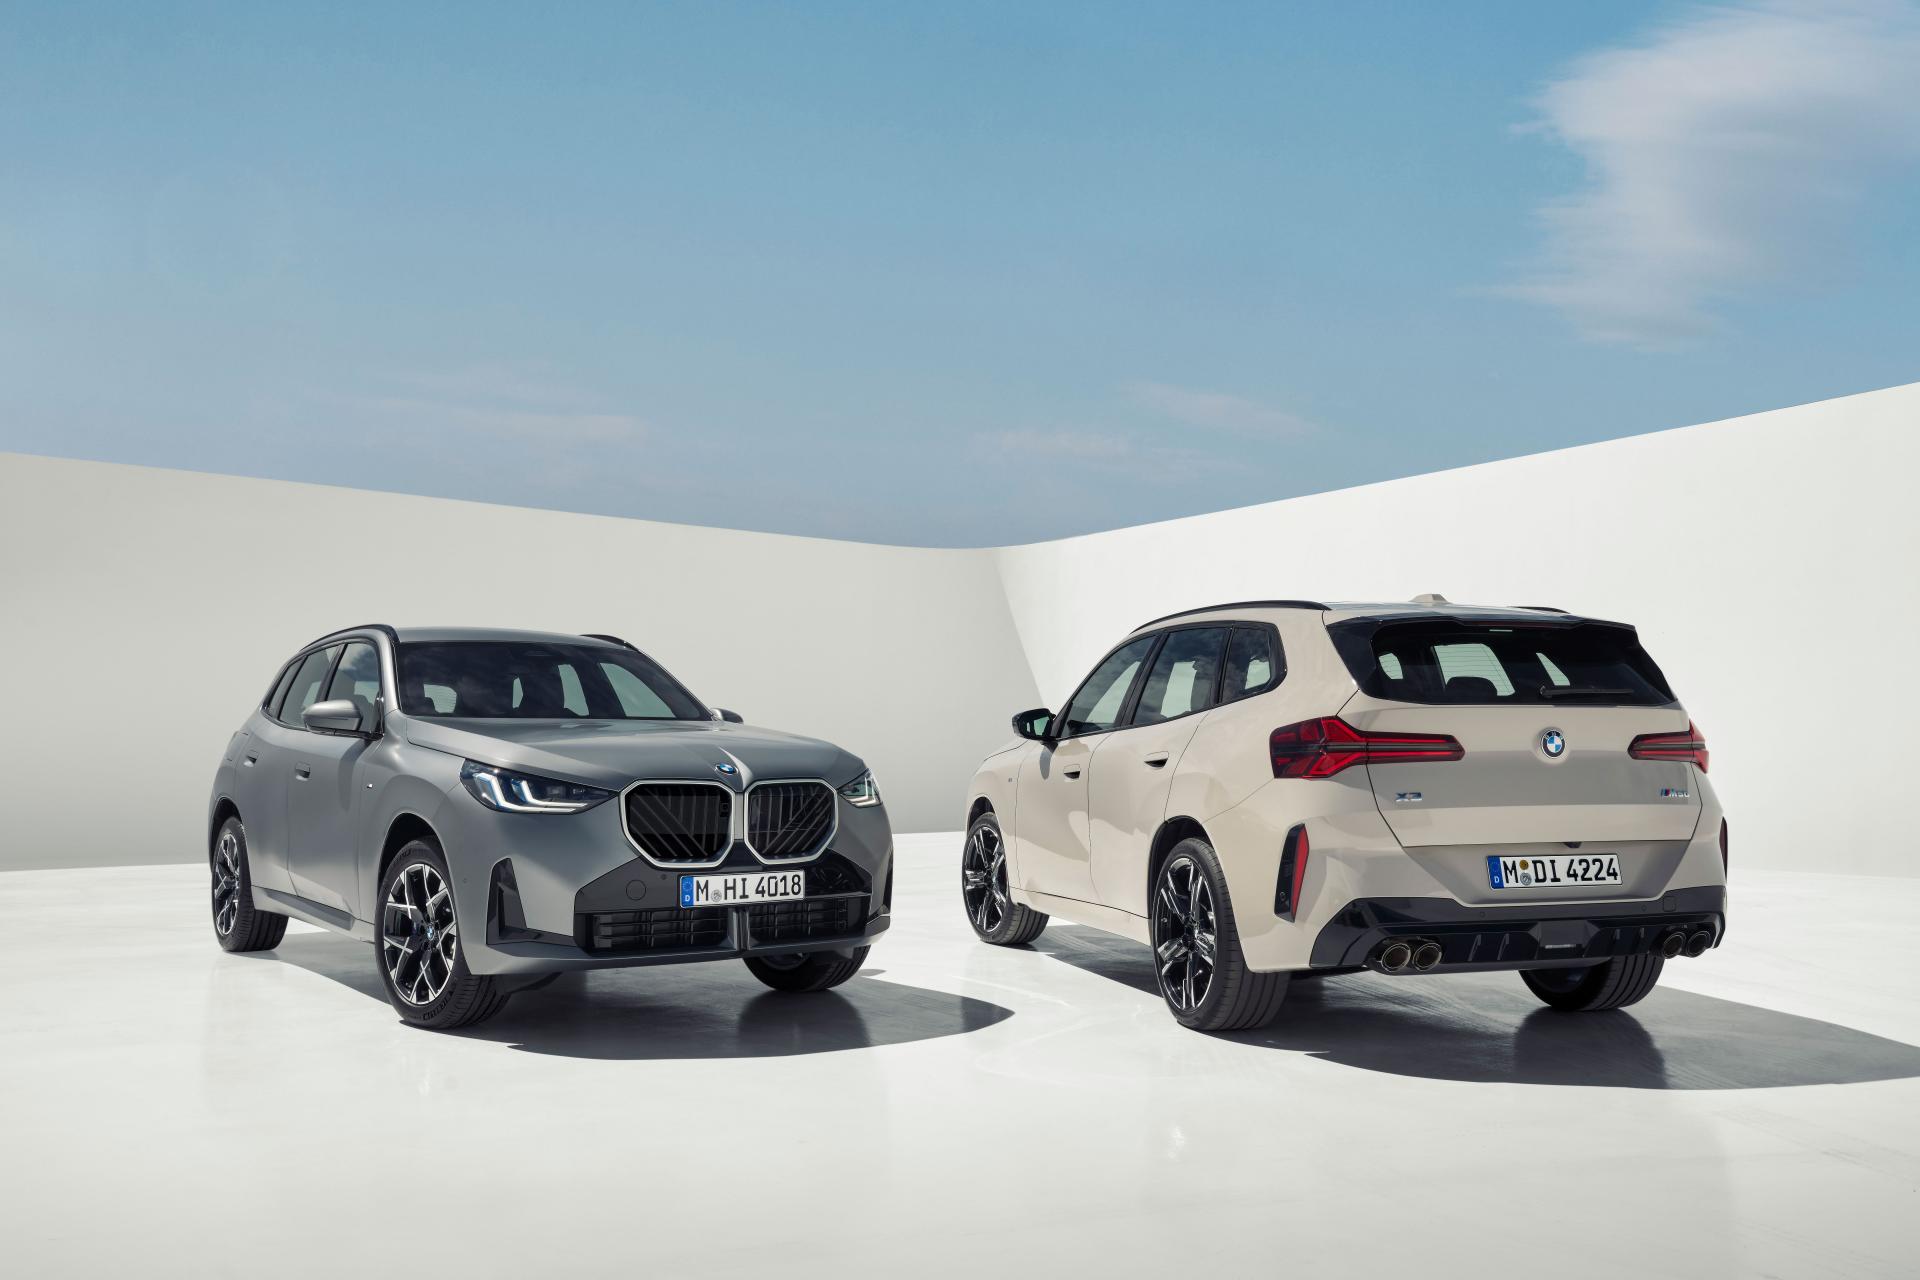 BMW vylepšuje svoj bestseller. V hlavnej úlohe je uhladenosť a prekopaný interiér